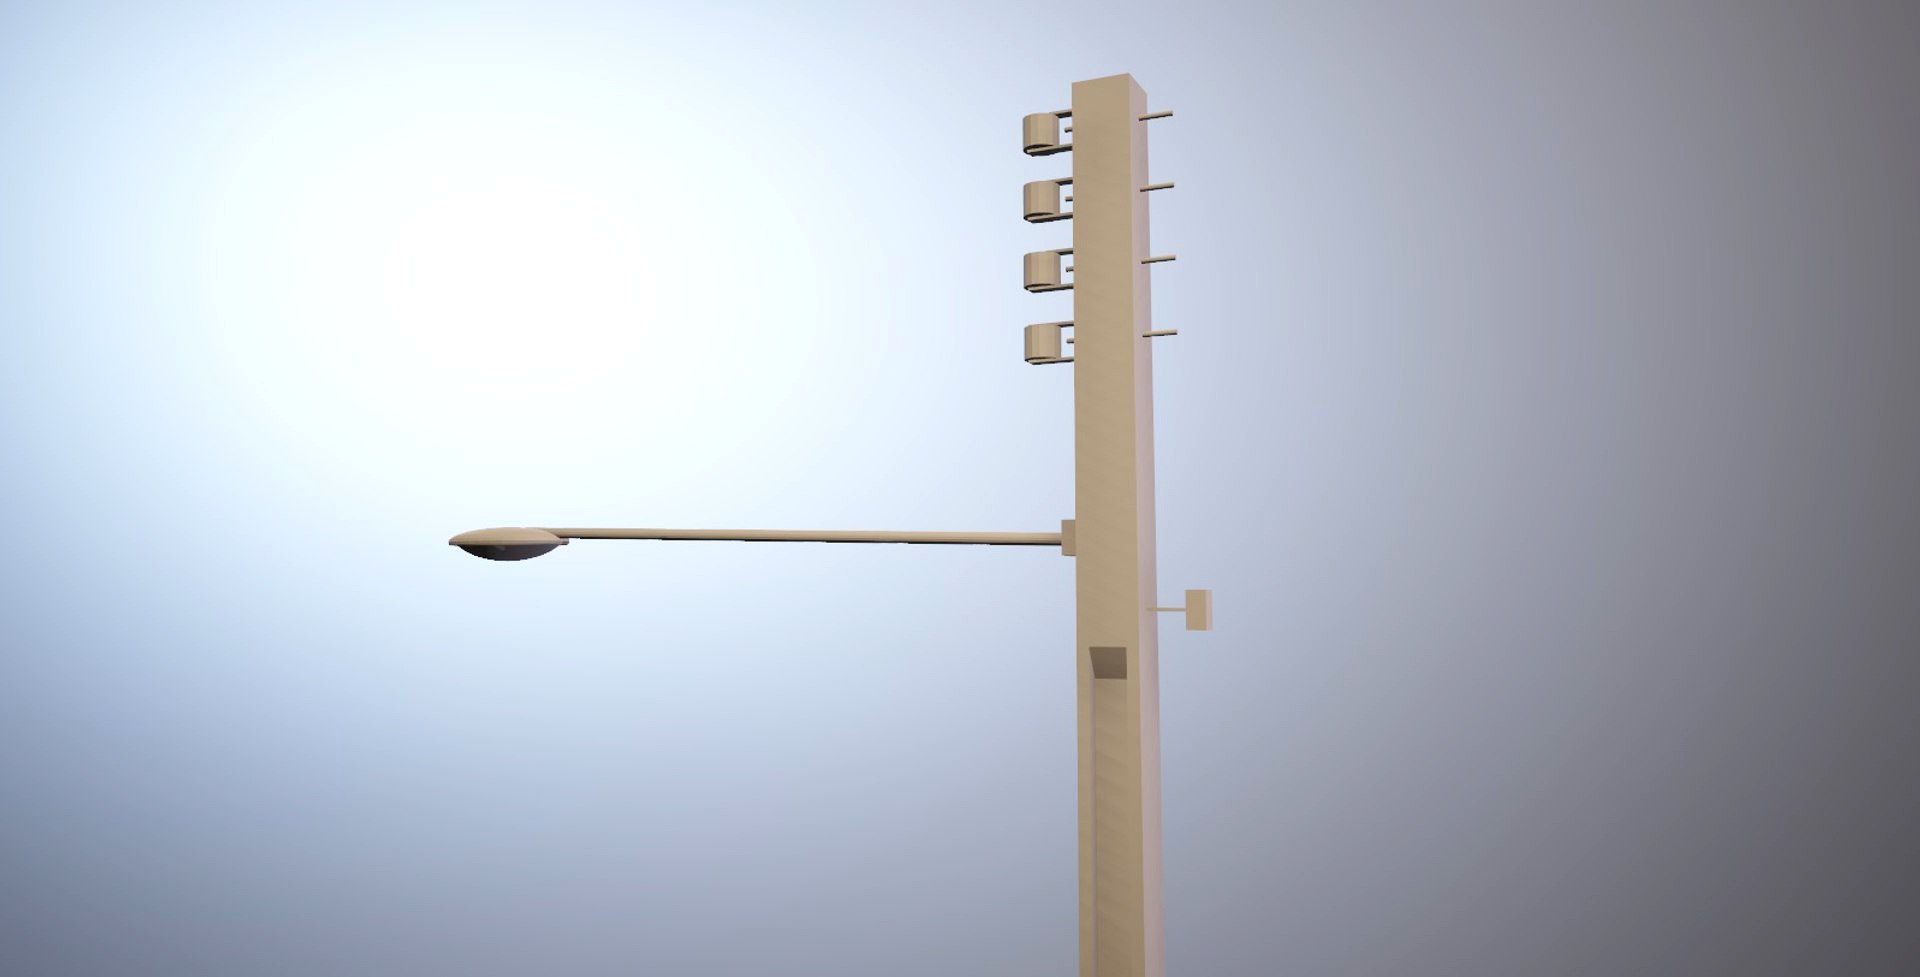 Brazilian light pole (Poste de luz brasileiro)